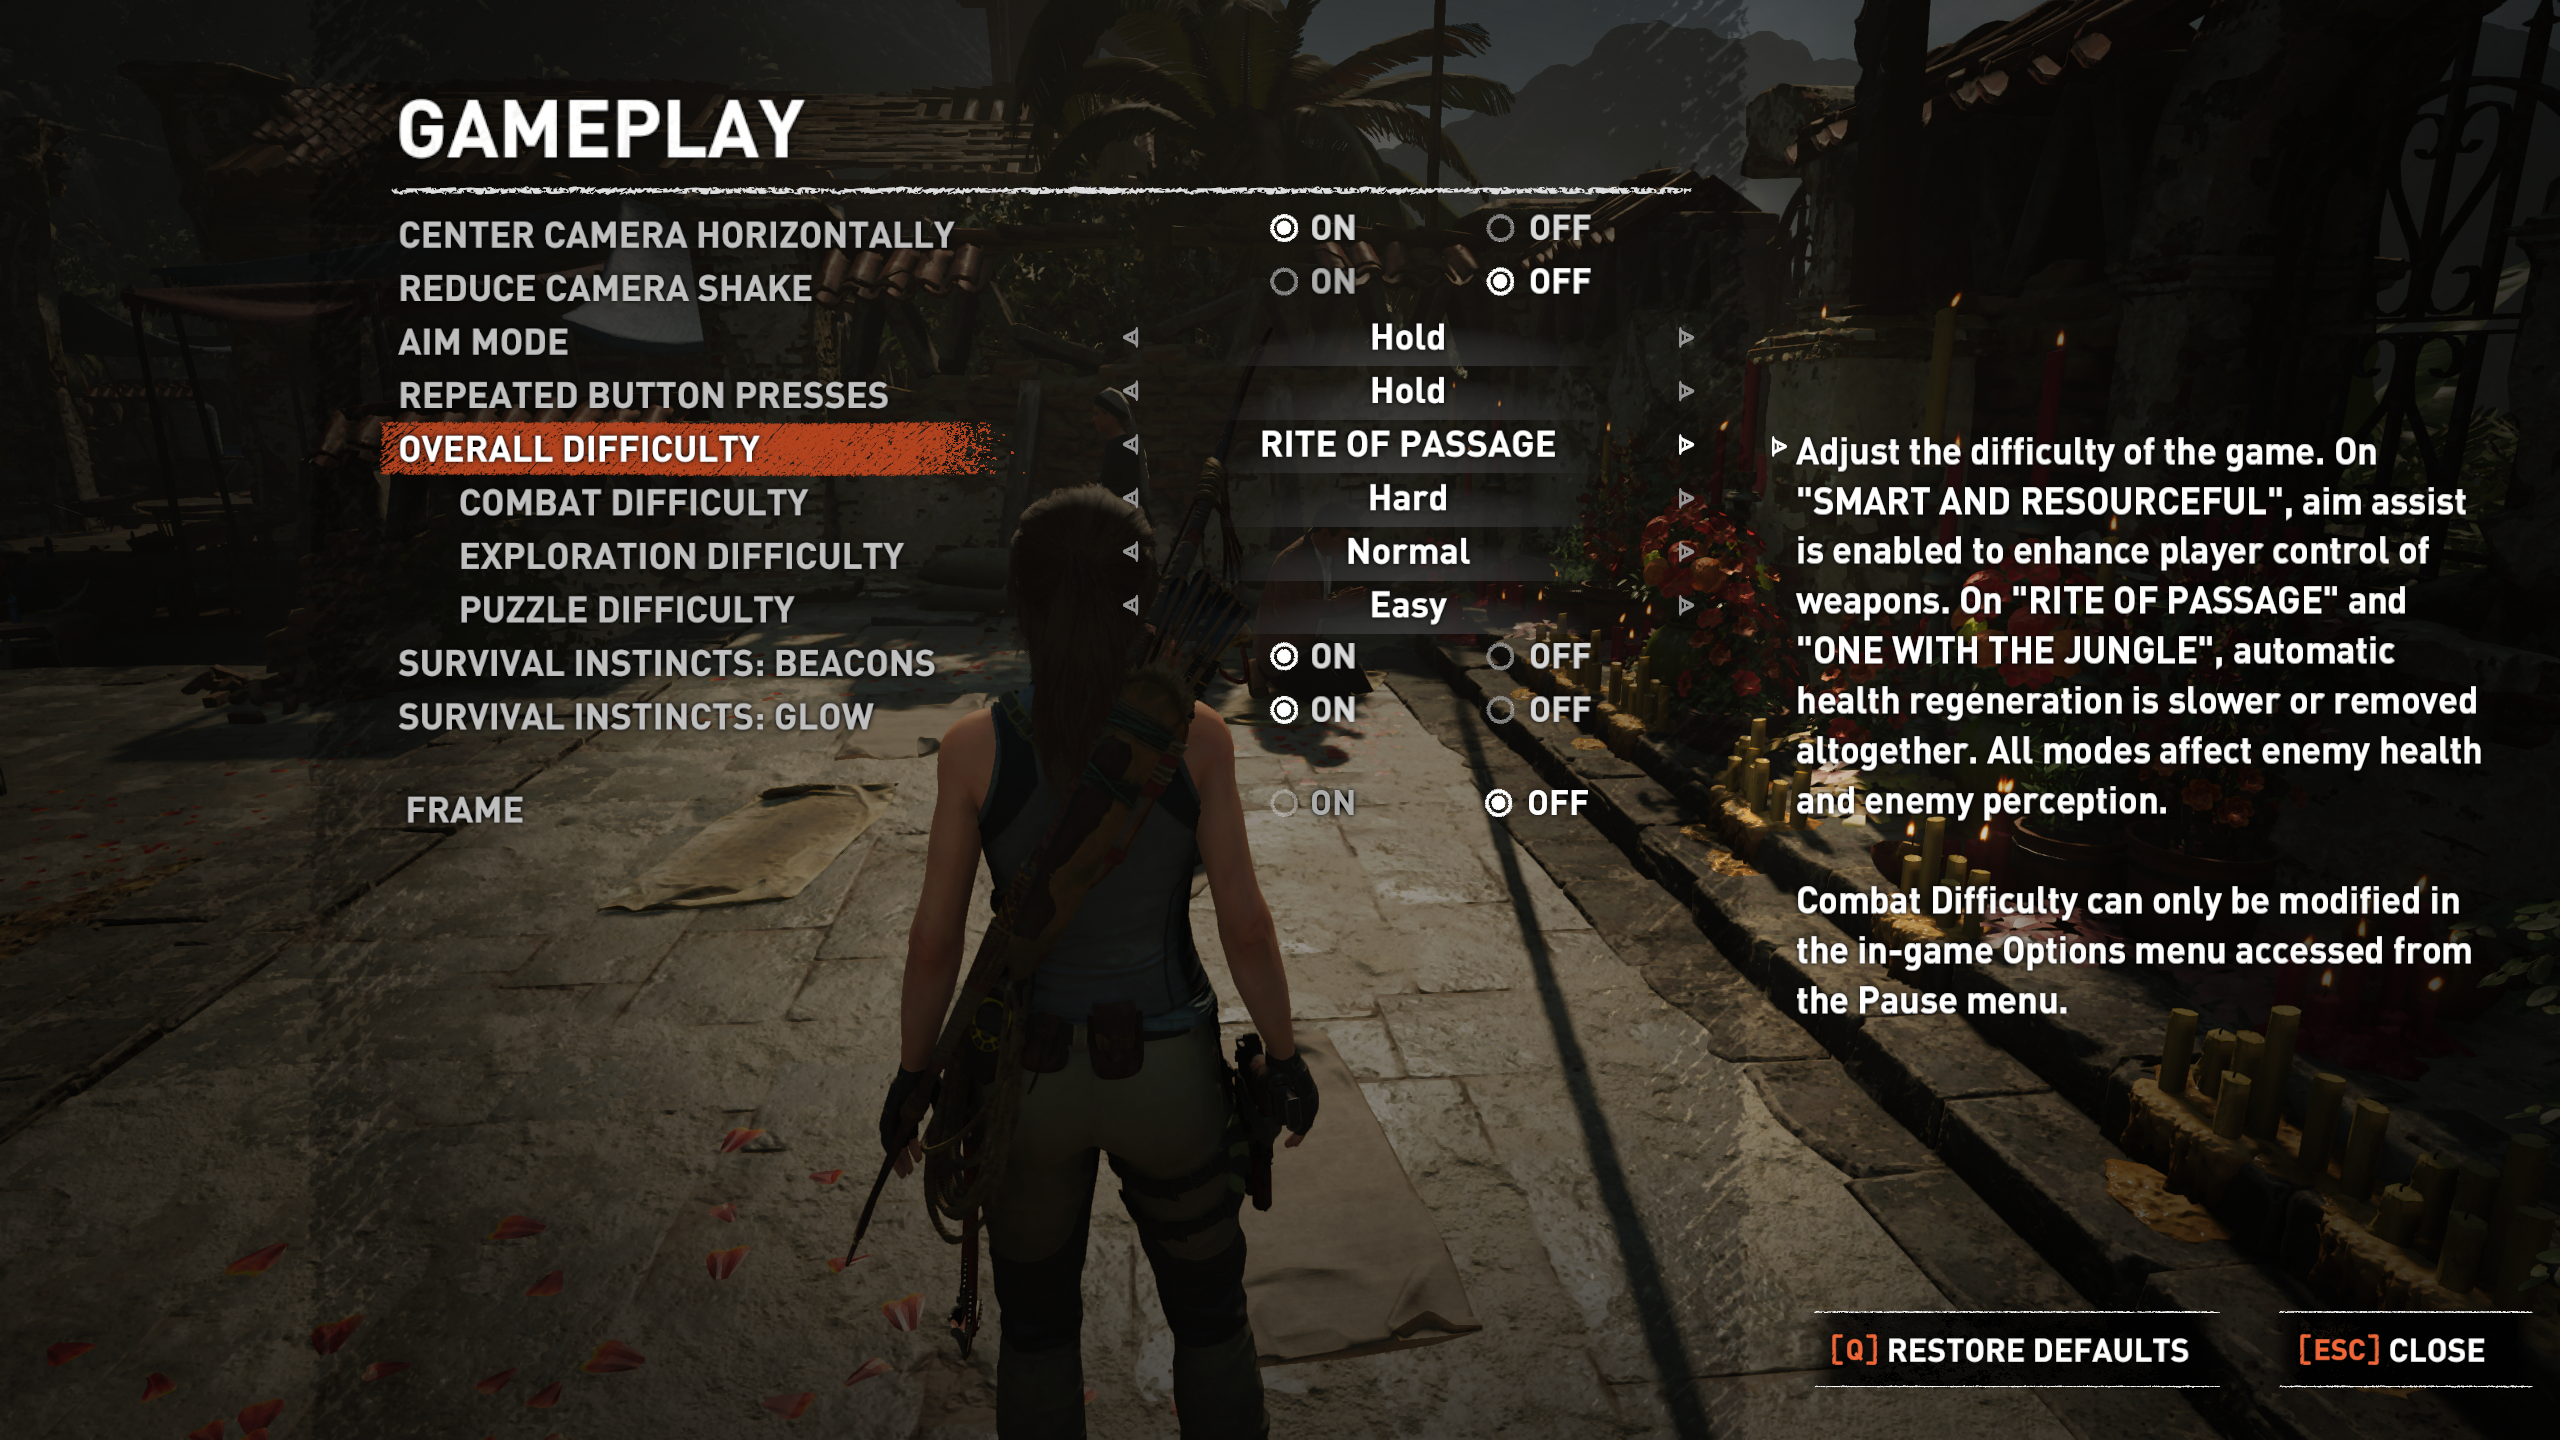 Estes são os requisitos para Shadow of the Tomb Raider no PC